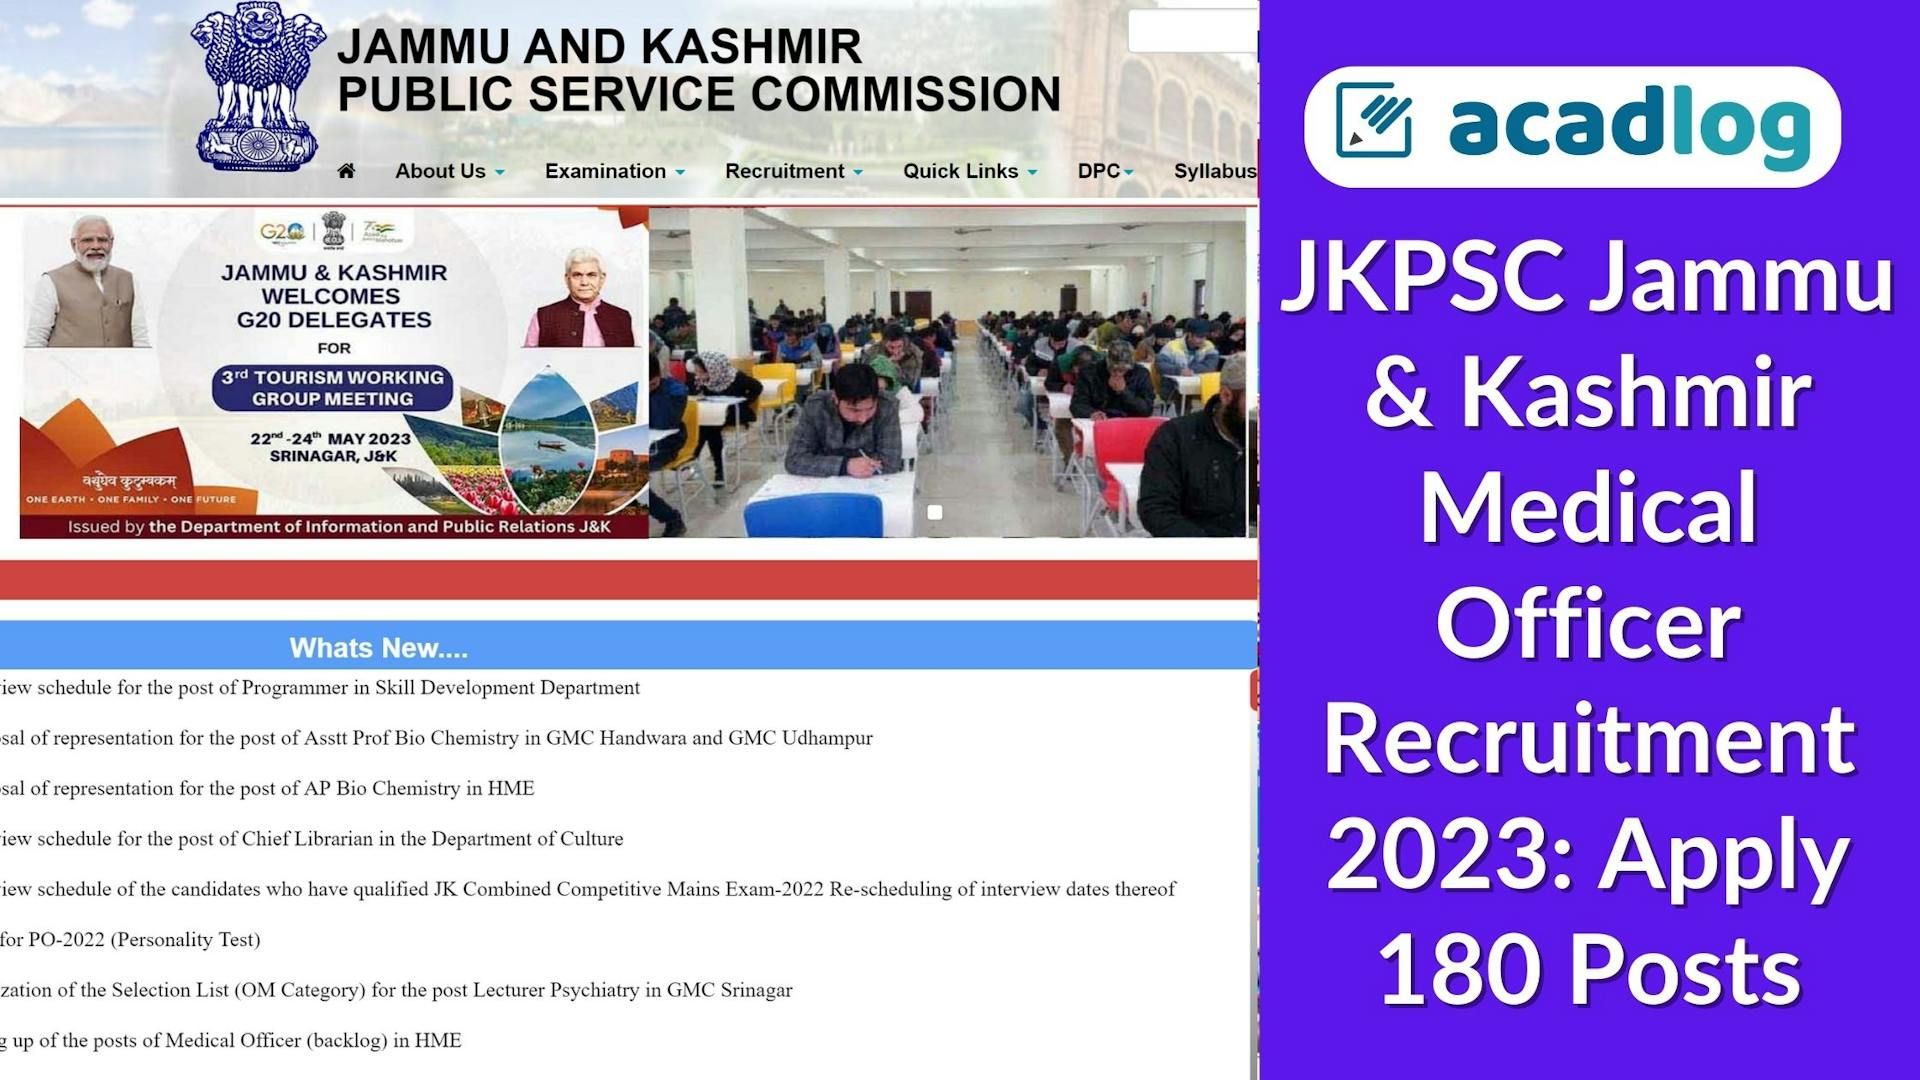 JKPSC Jammu & Kashmir Medical Officer Recruitment 2023: Apply 180 Posts